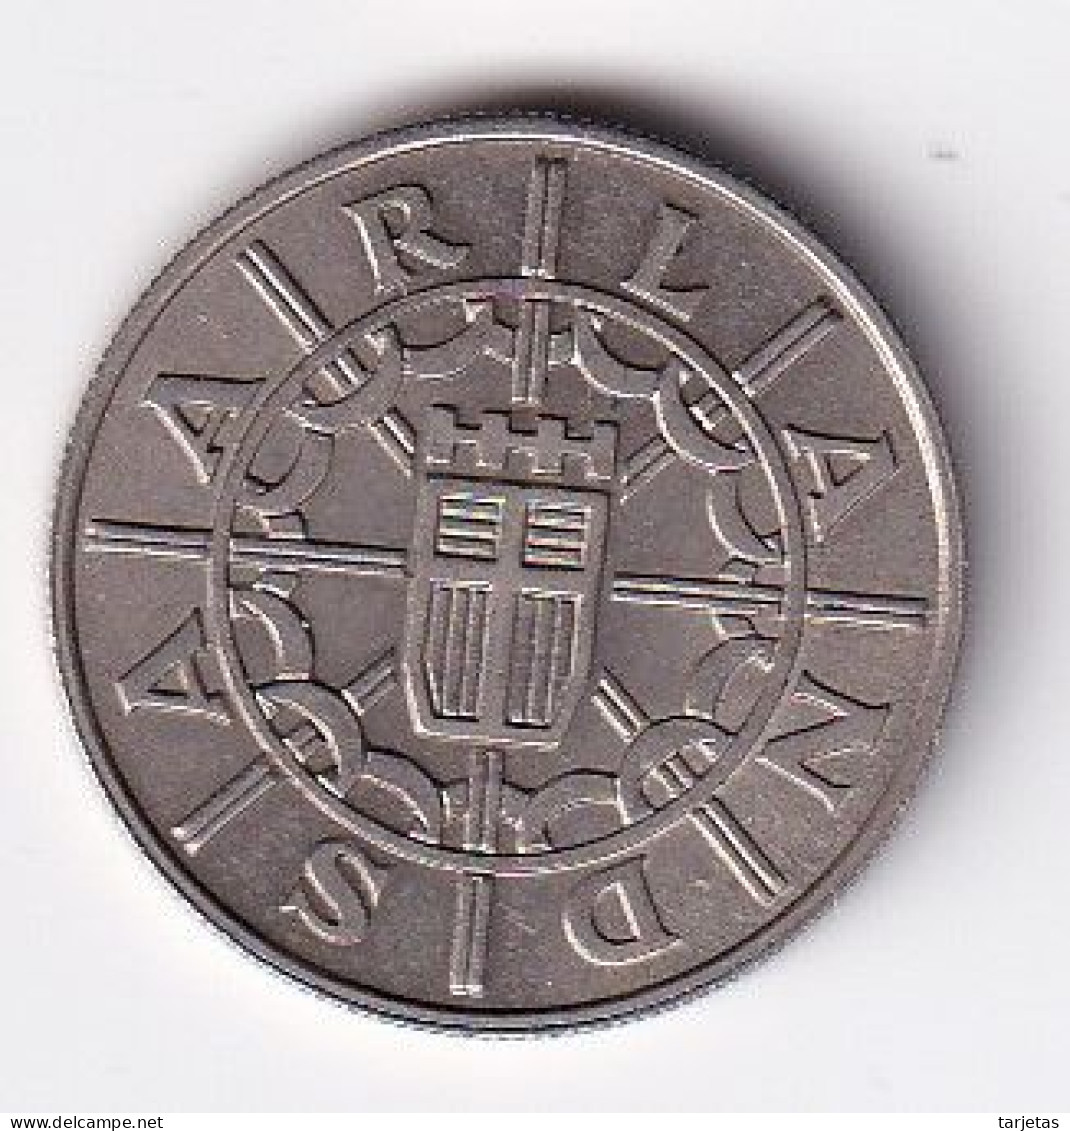 MONEDA DE SARRE DE 100 FRANCS DEL AÑO 1955 SIN CIRCULAR (UNC) - 100 Francos